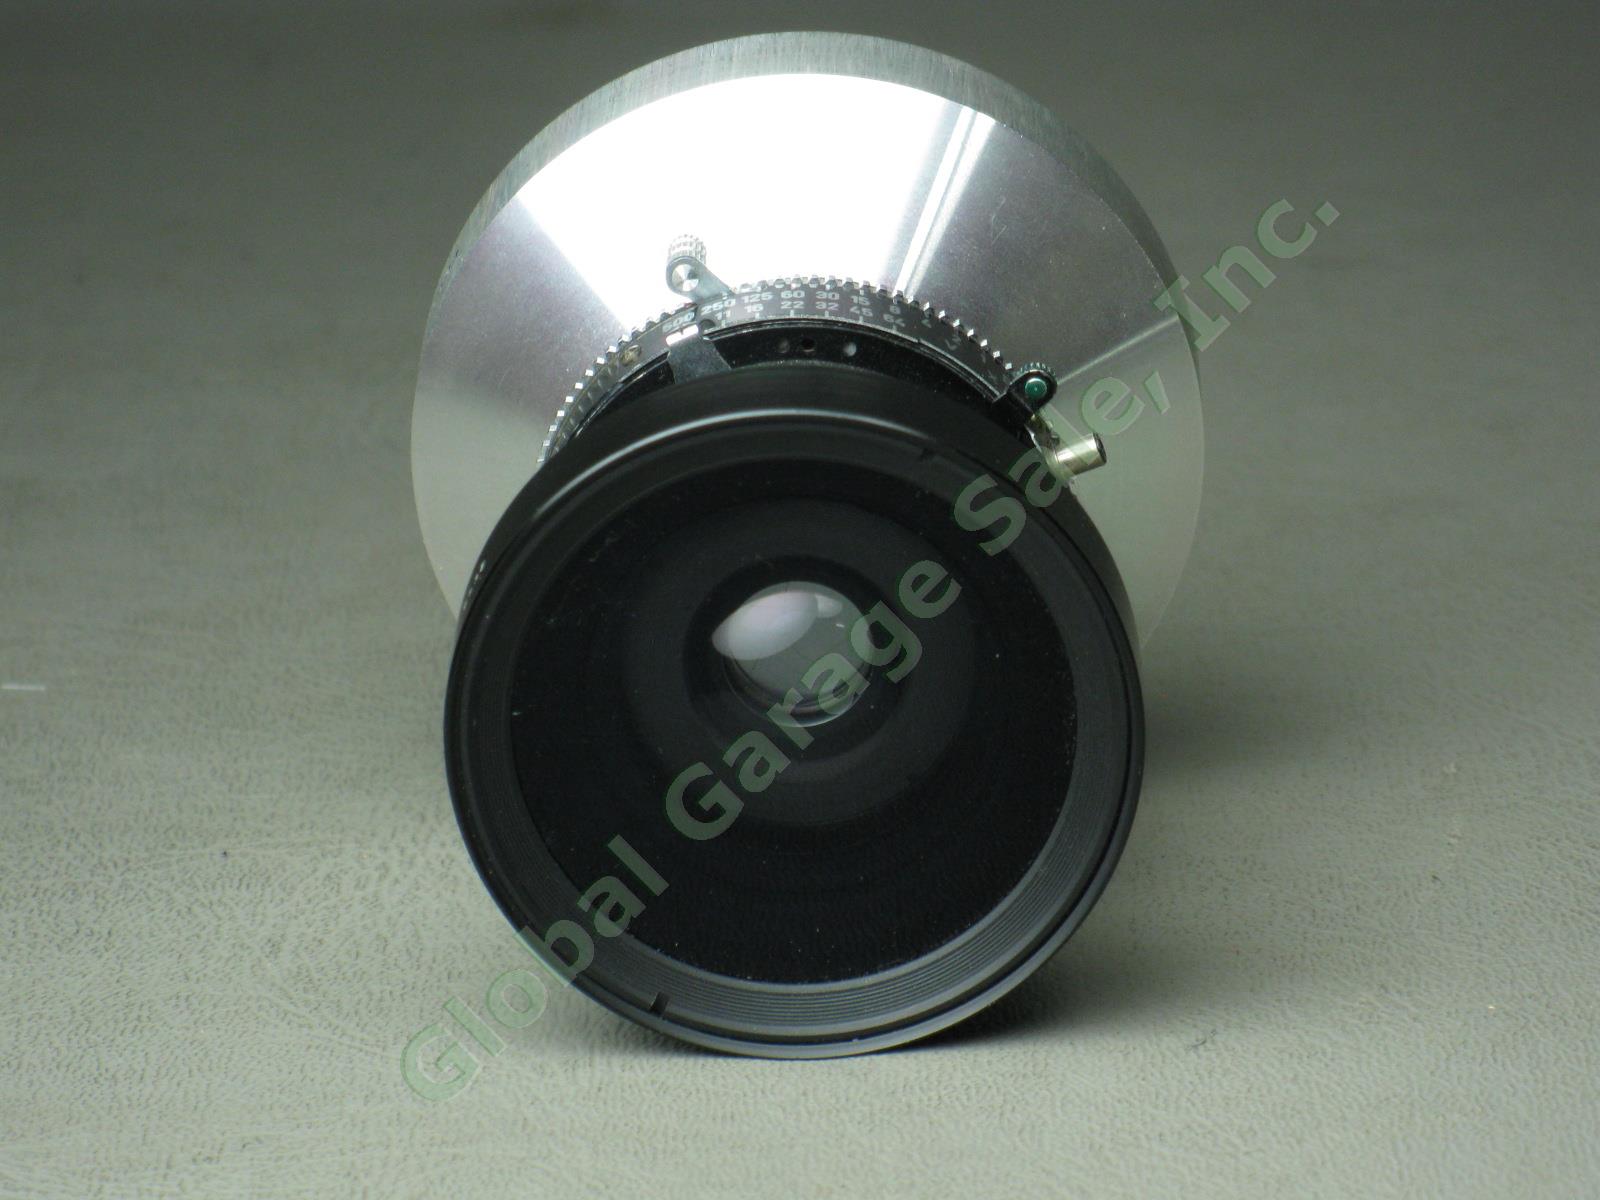 Schneider-Kreuznach Super-Angulon 1:8 f/8 90mm Camera Lens Serial #7206932 NR! 5